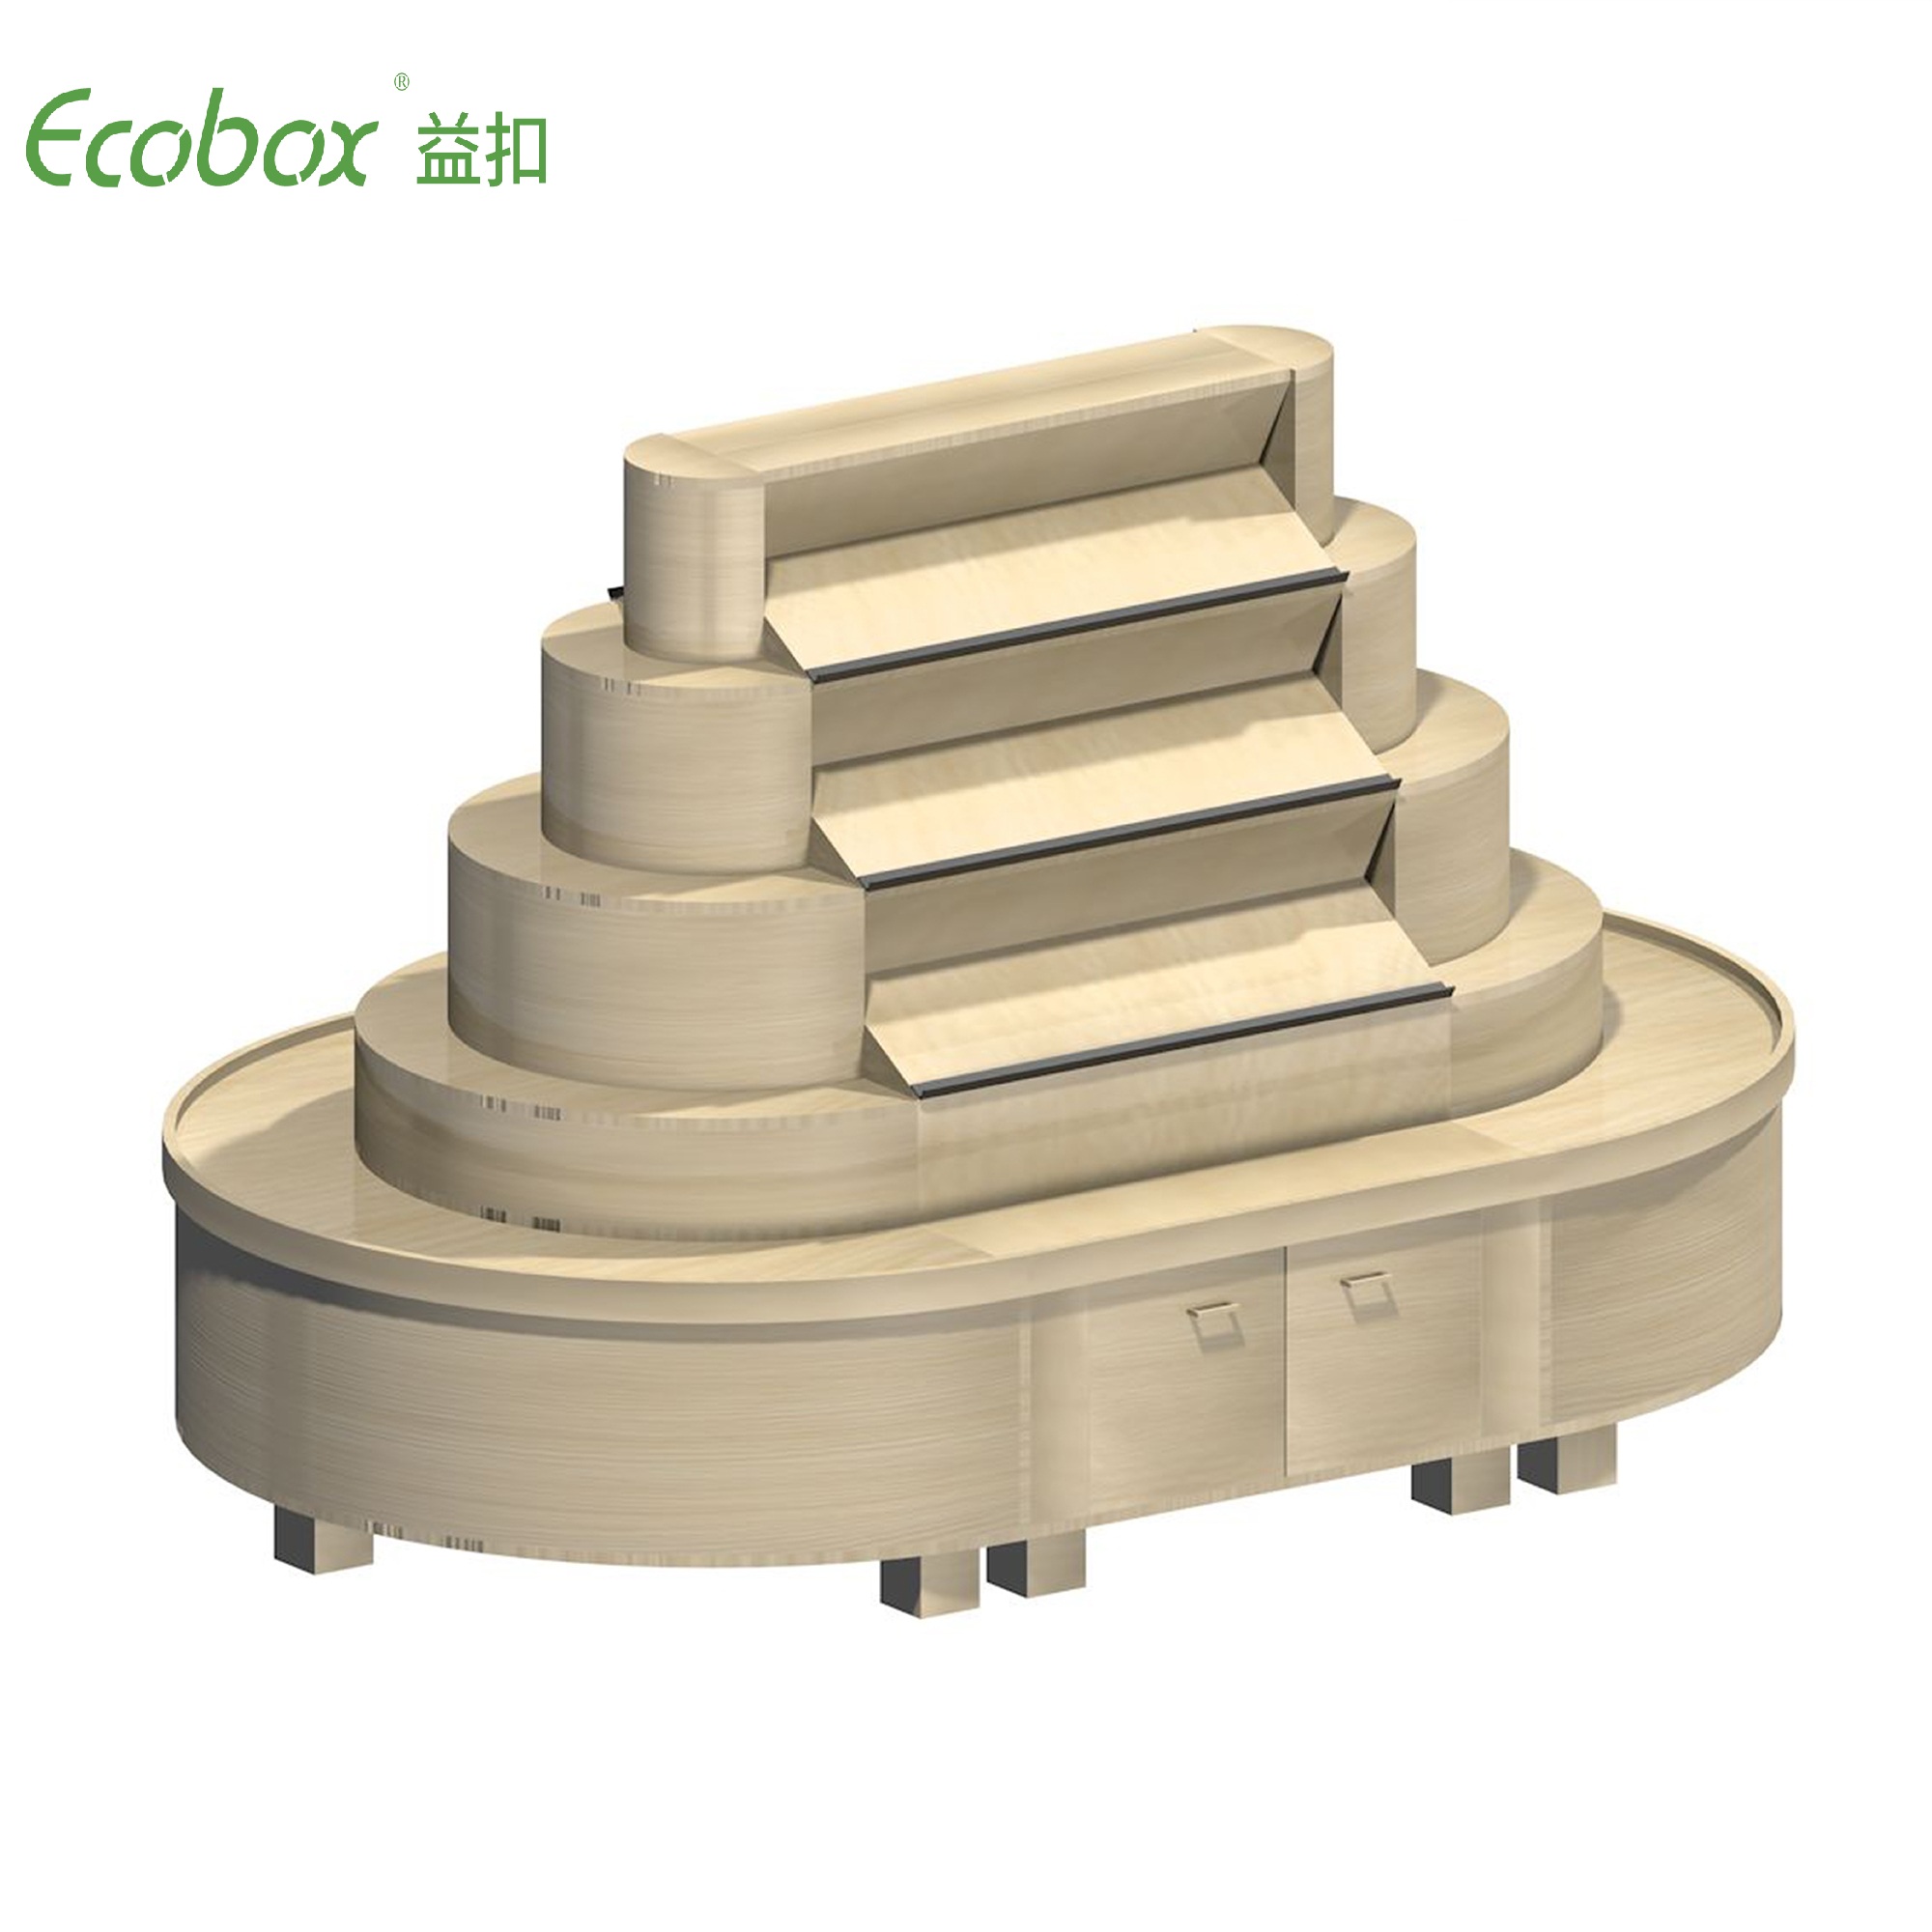 Rundes Regal der Ecobox G002-Serie mit Ecobox-Großbehältern für Supermarkt-Großlebensmitteldisplays